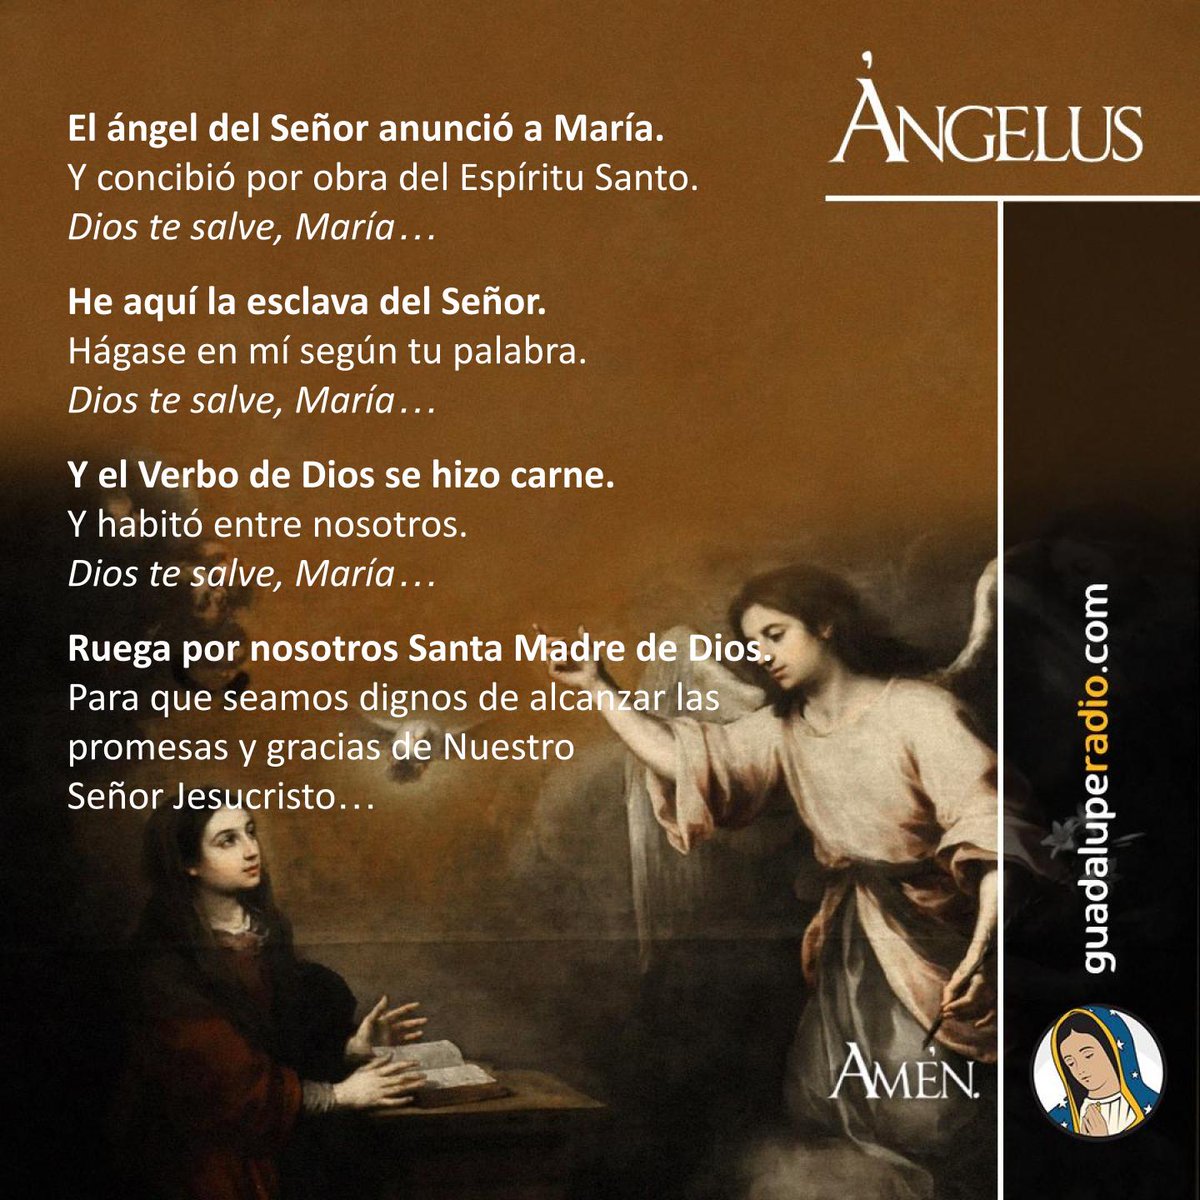 ¡Bendita eres entre todas las mujeres!
#Angelus
#GuadalupeRadio